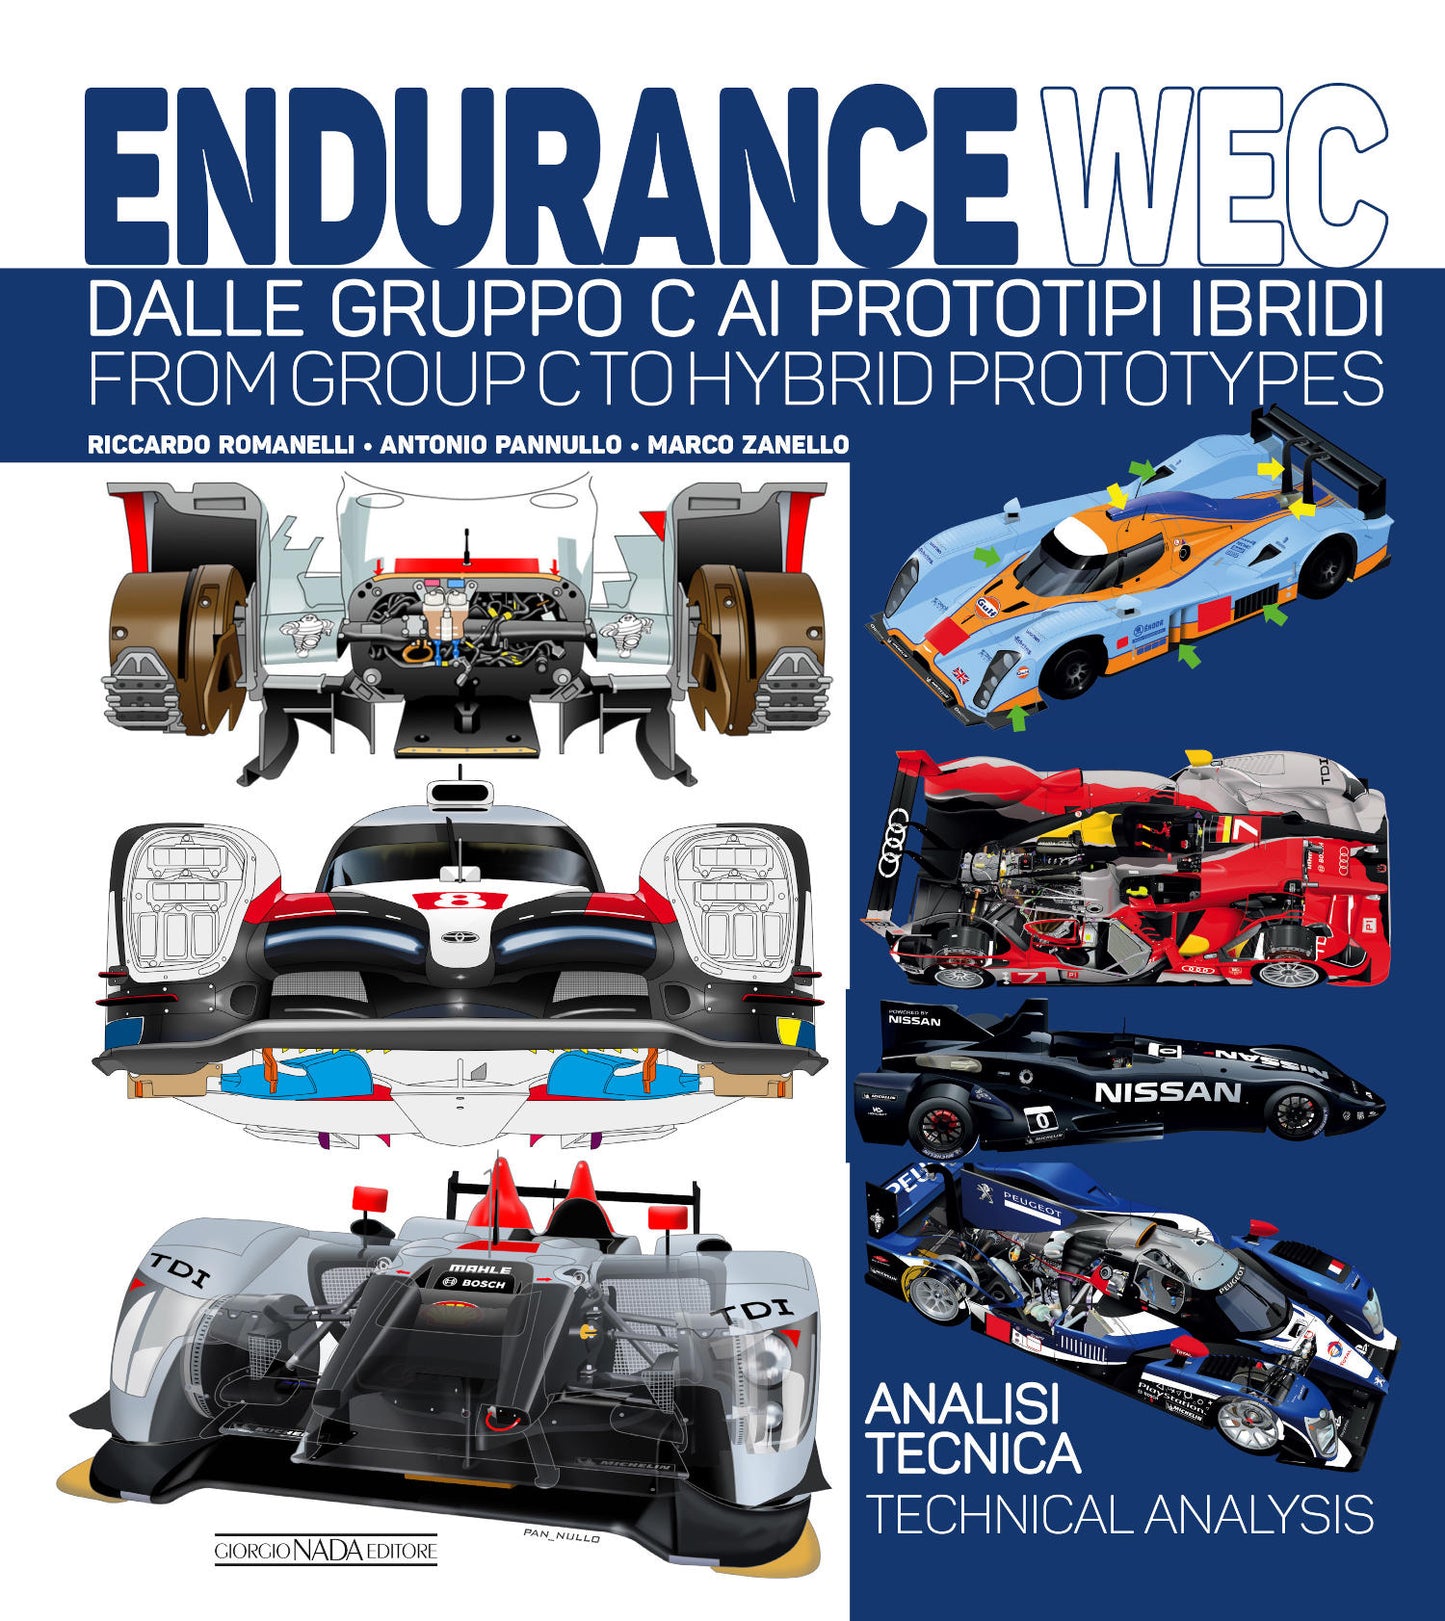 Endurance WEC. Dalle Gruppo C ai prototipi ibridi/ From Group C to Hybrid prototypes